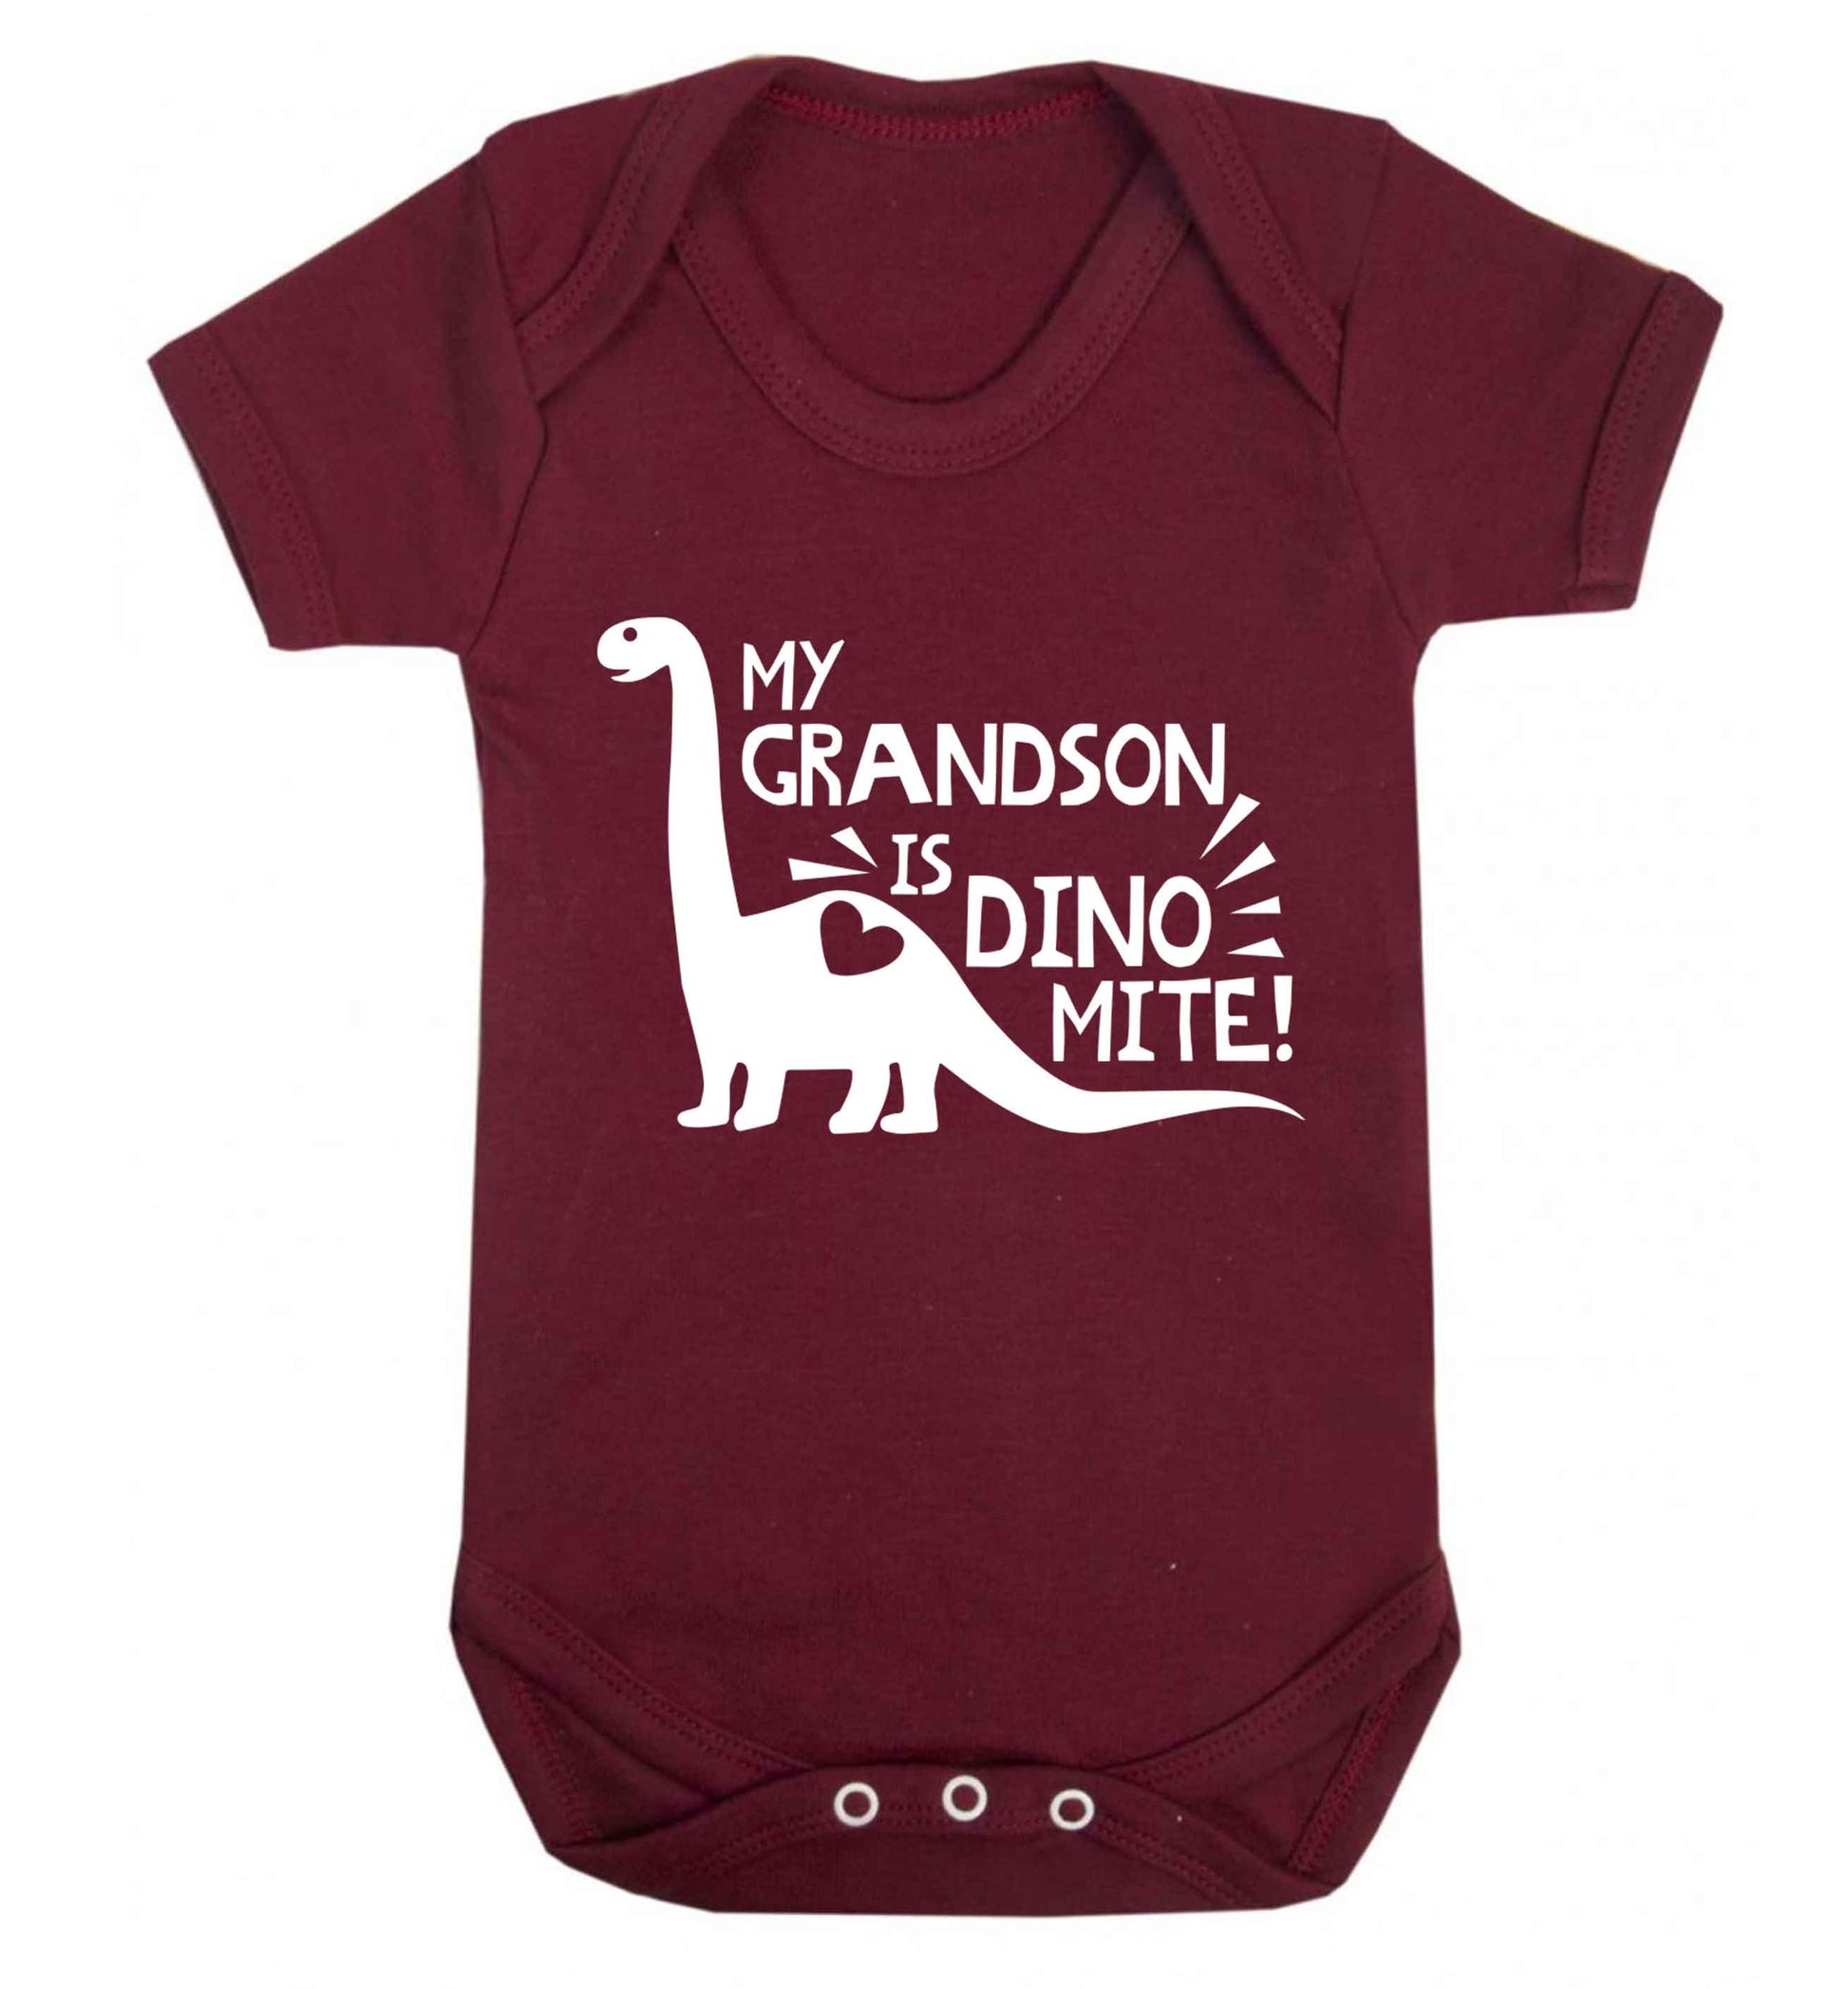 My grandson is dinomite! Baby Vest maroon 18-24 months